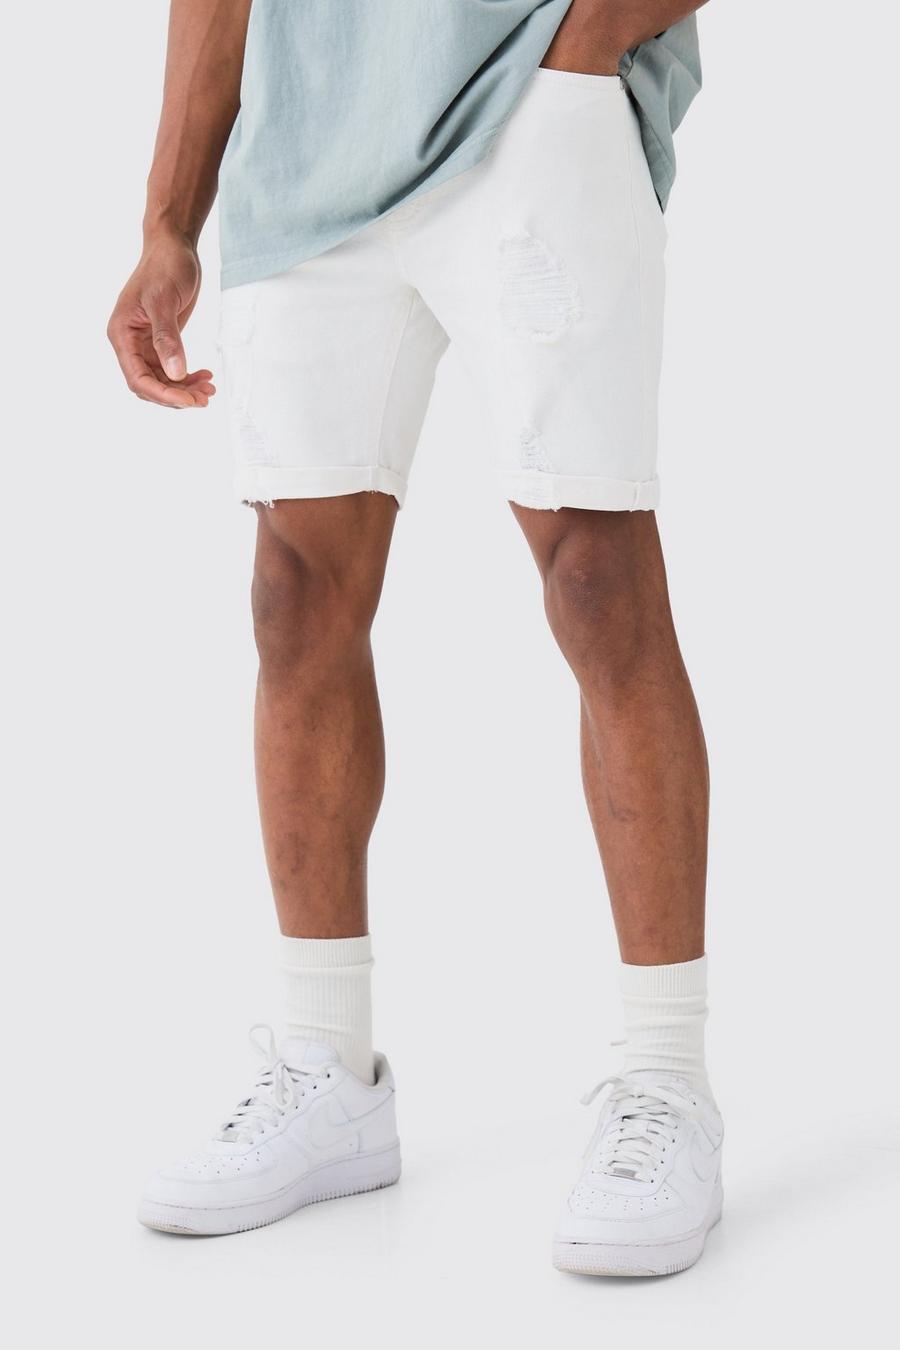 Pantalones cortos vaqueros pitillo elásticos desgastados en blanco, White